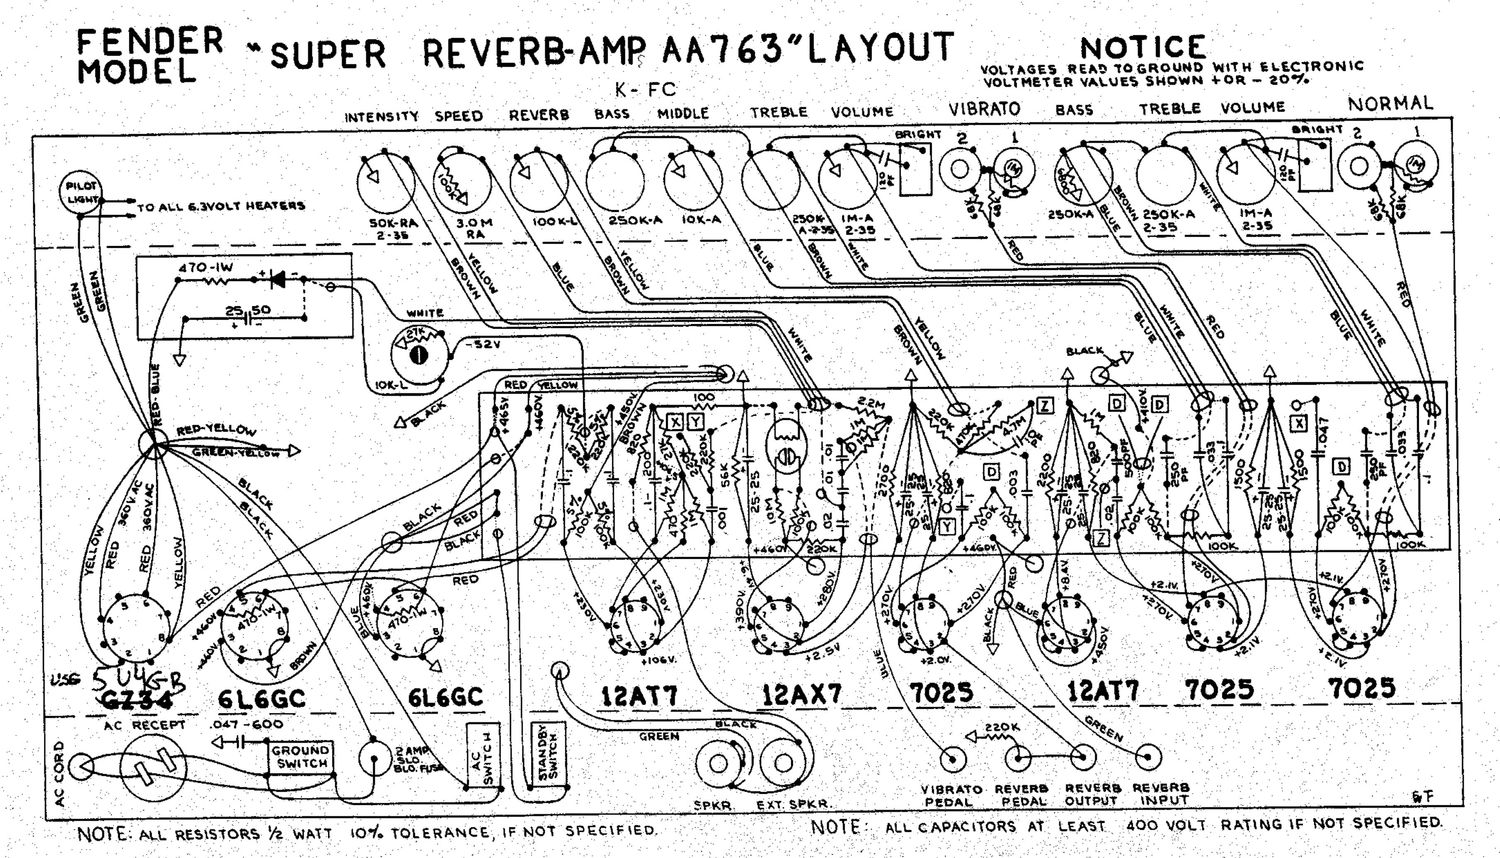 fender super reverb aa763 layout schematic